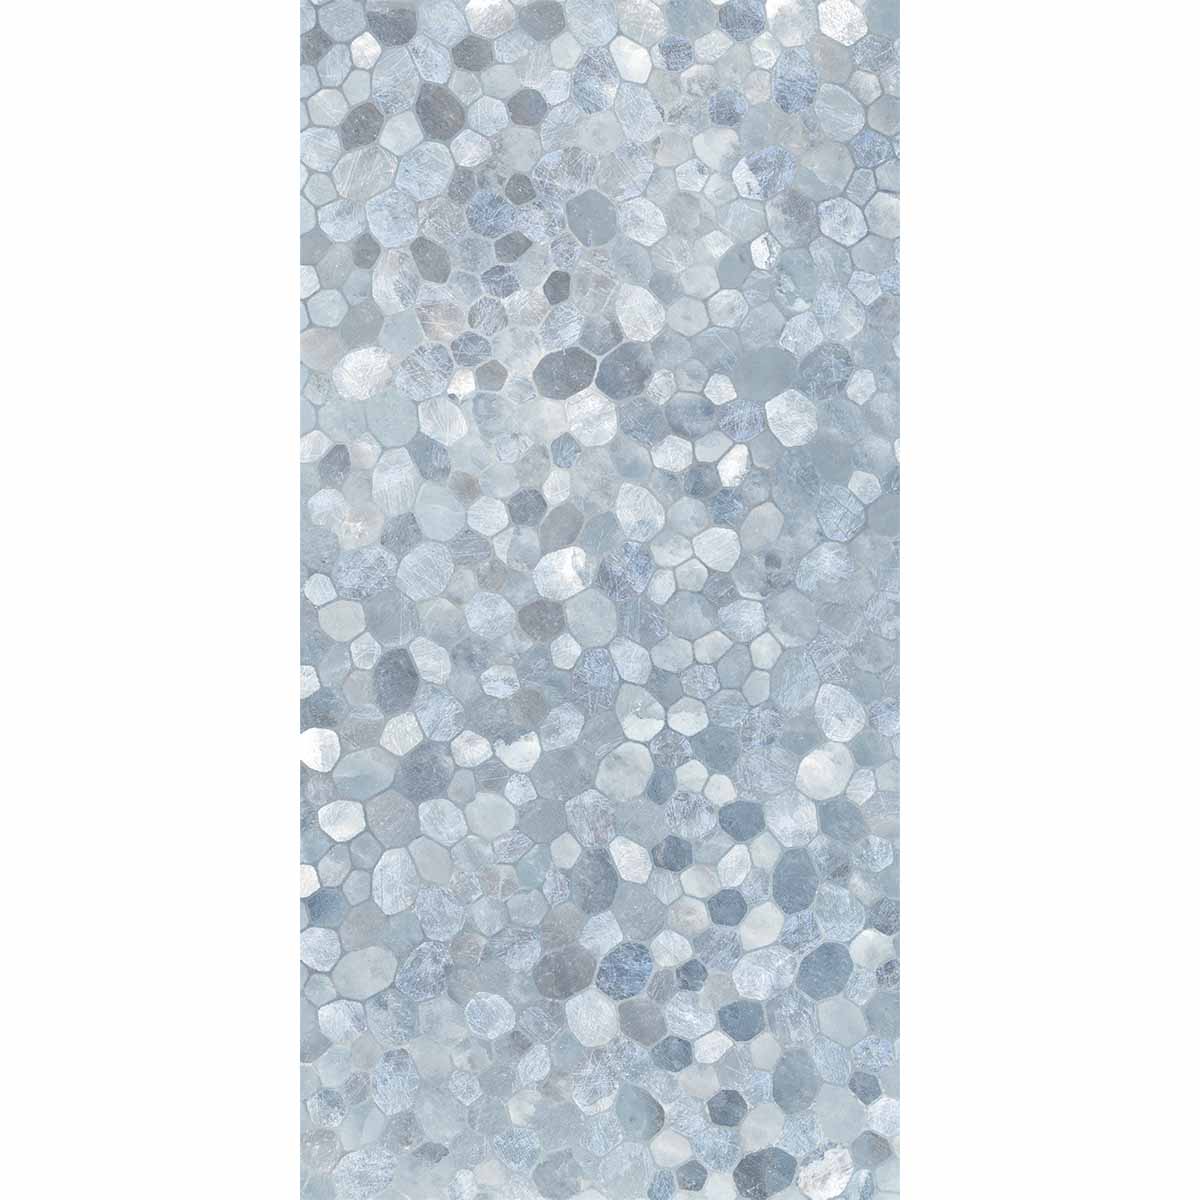 Riviera Onyx Blue-Rock Salt Effect Decor Mosaic Wall Porcelain Tile 60x120cm Matt